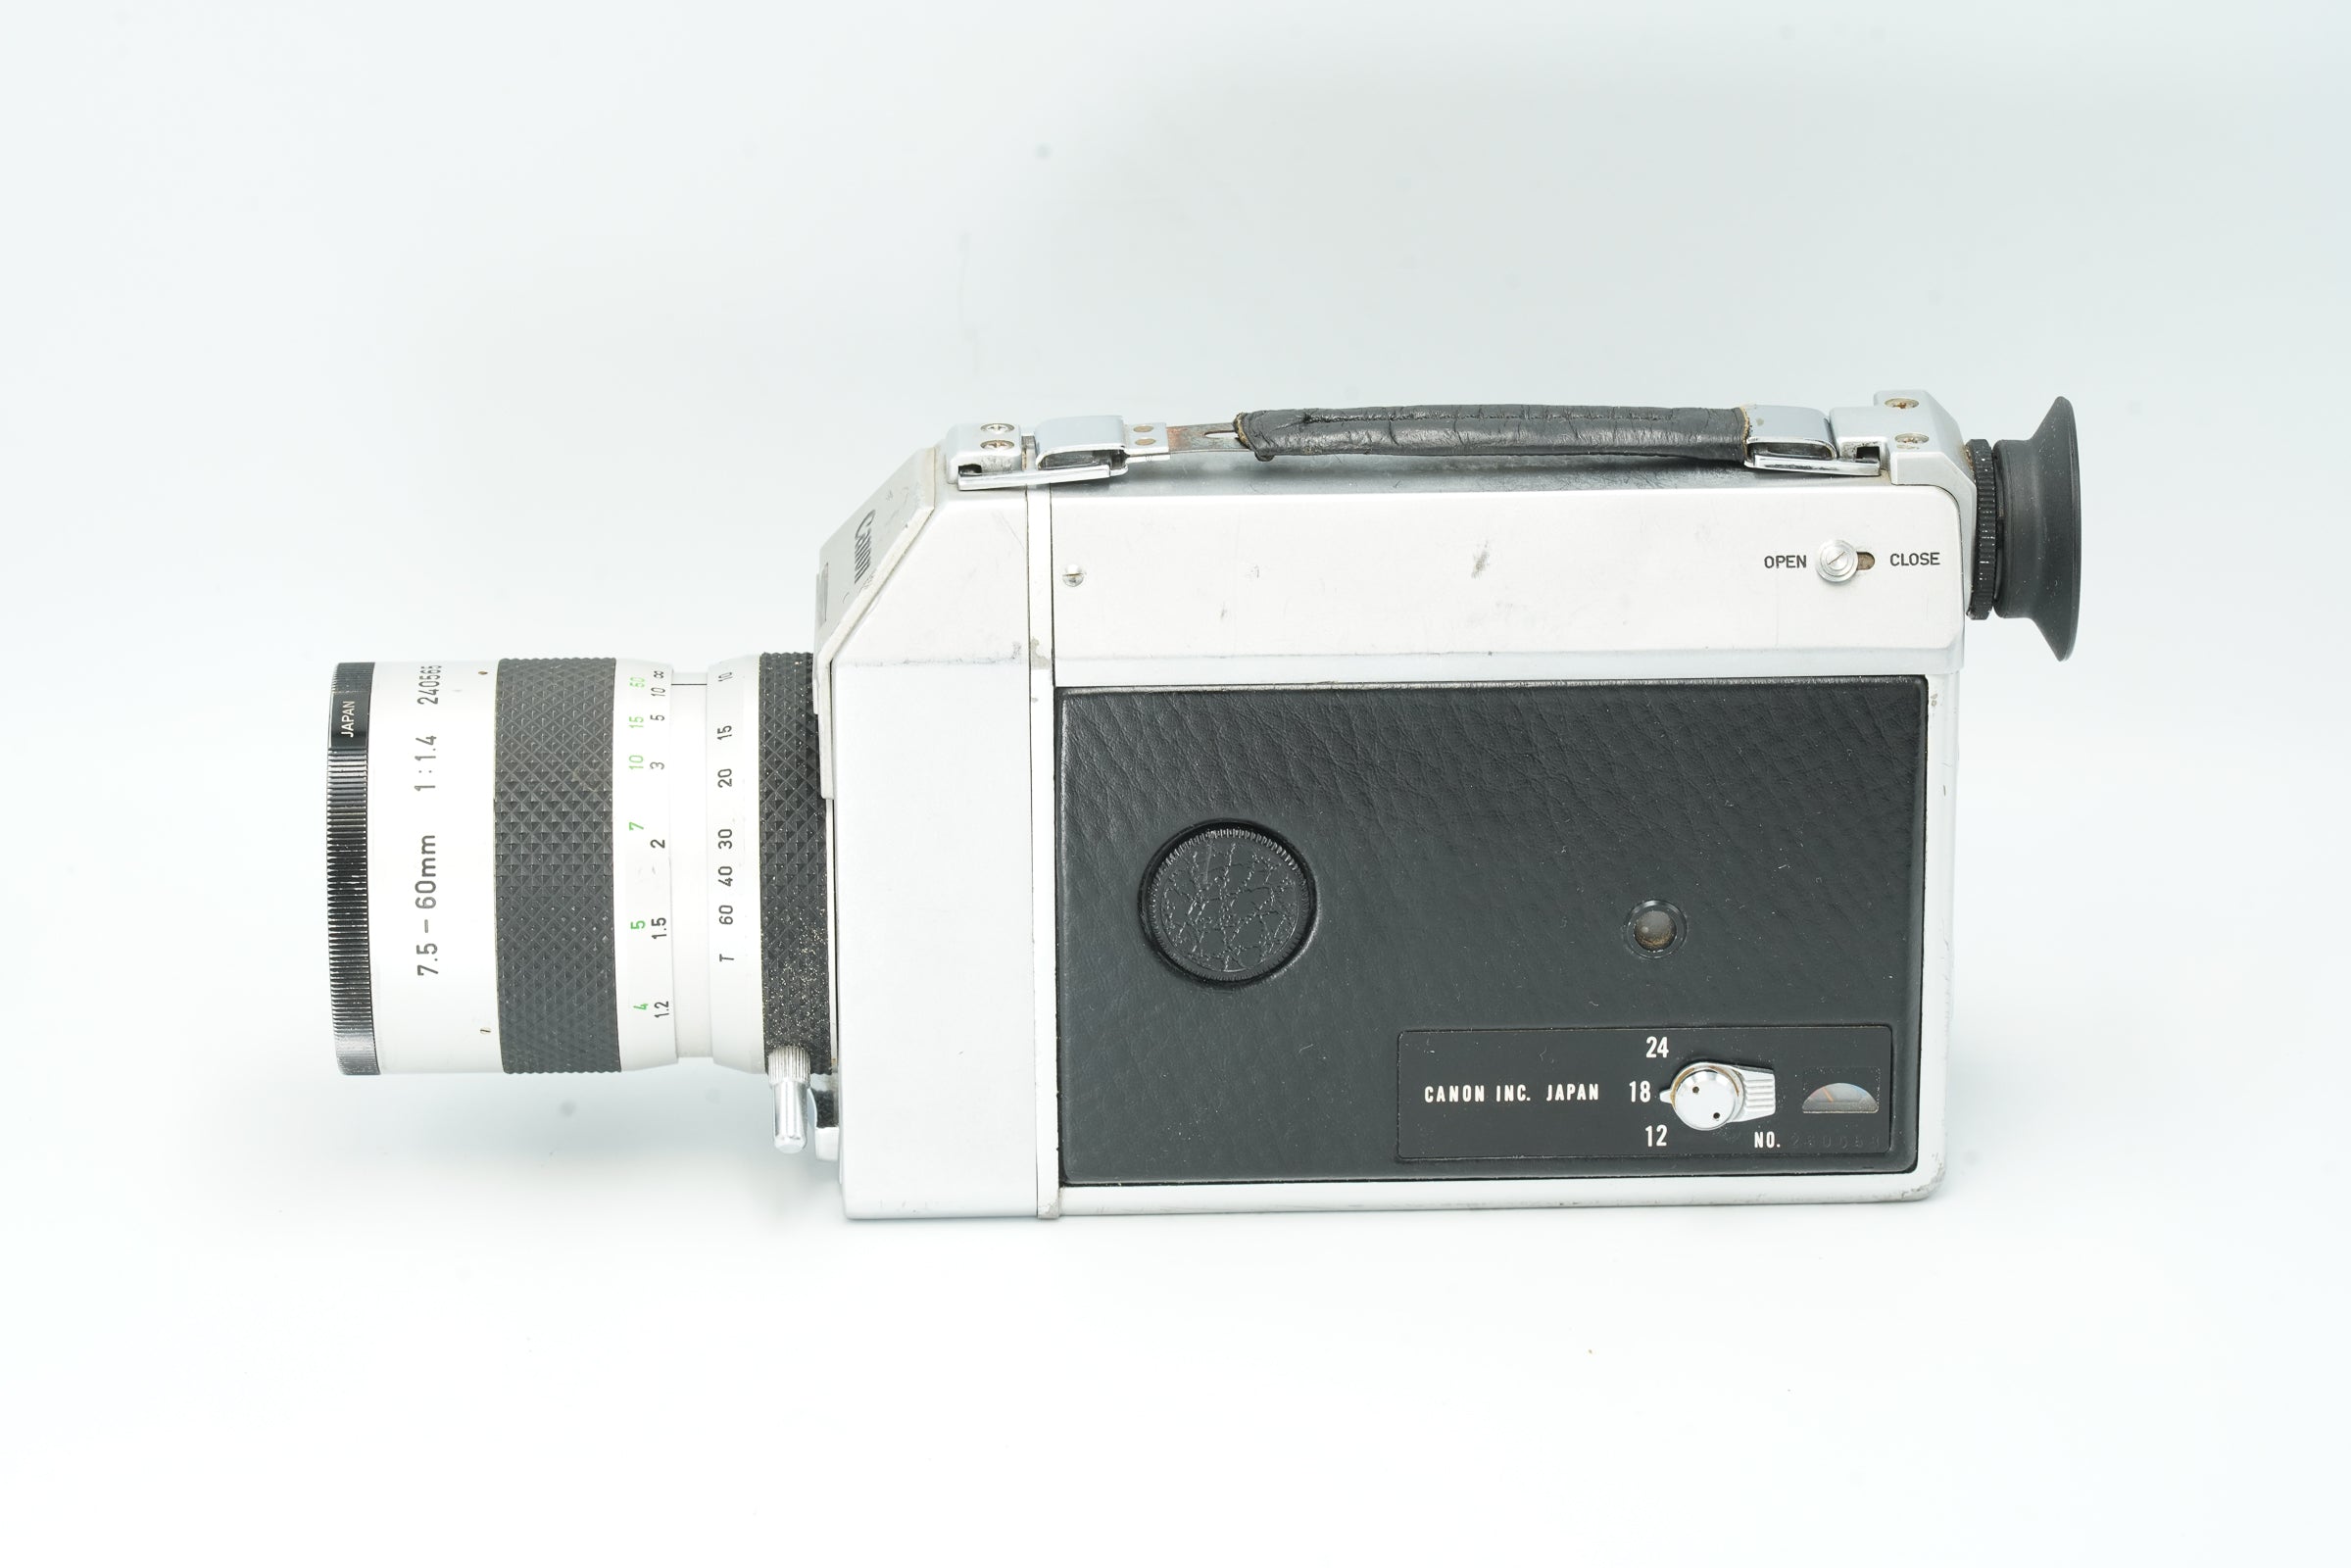 Canon Auto Zoom 814 Professional Super 8 camera